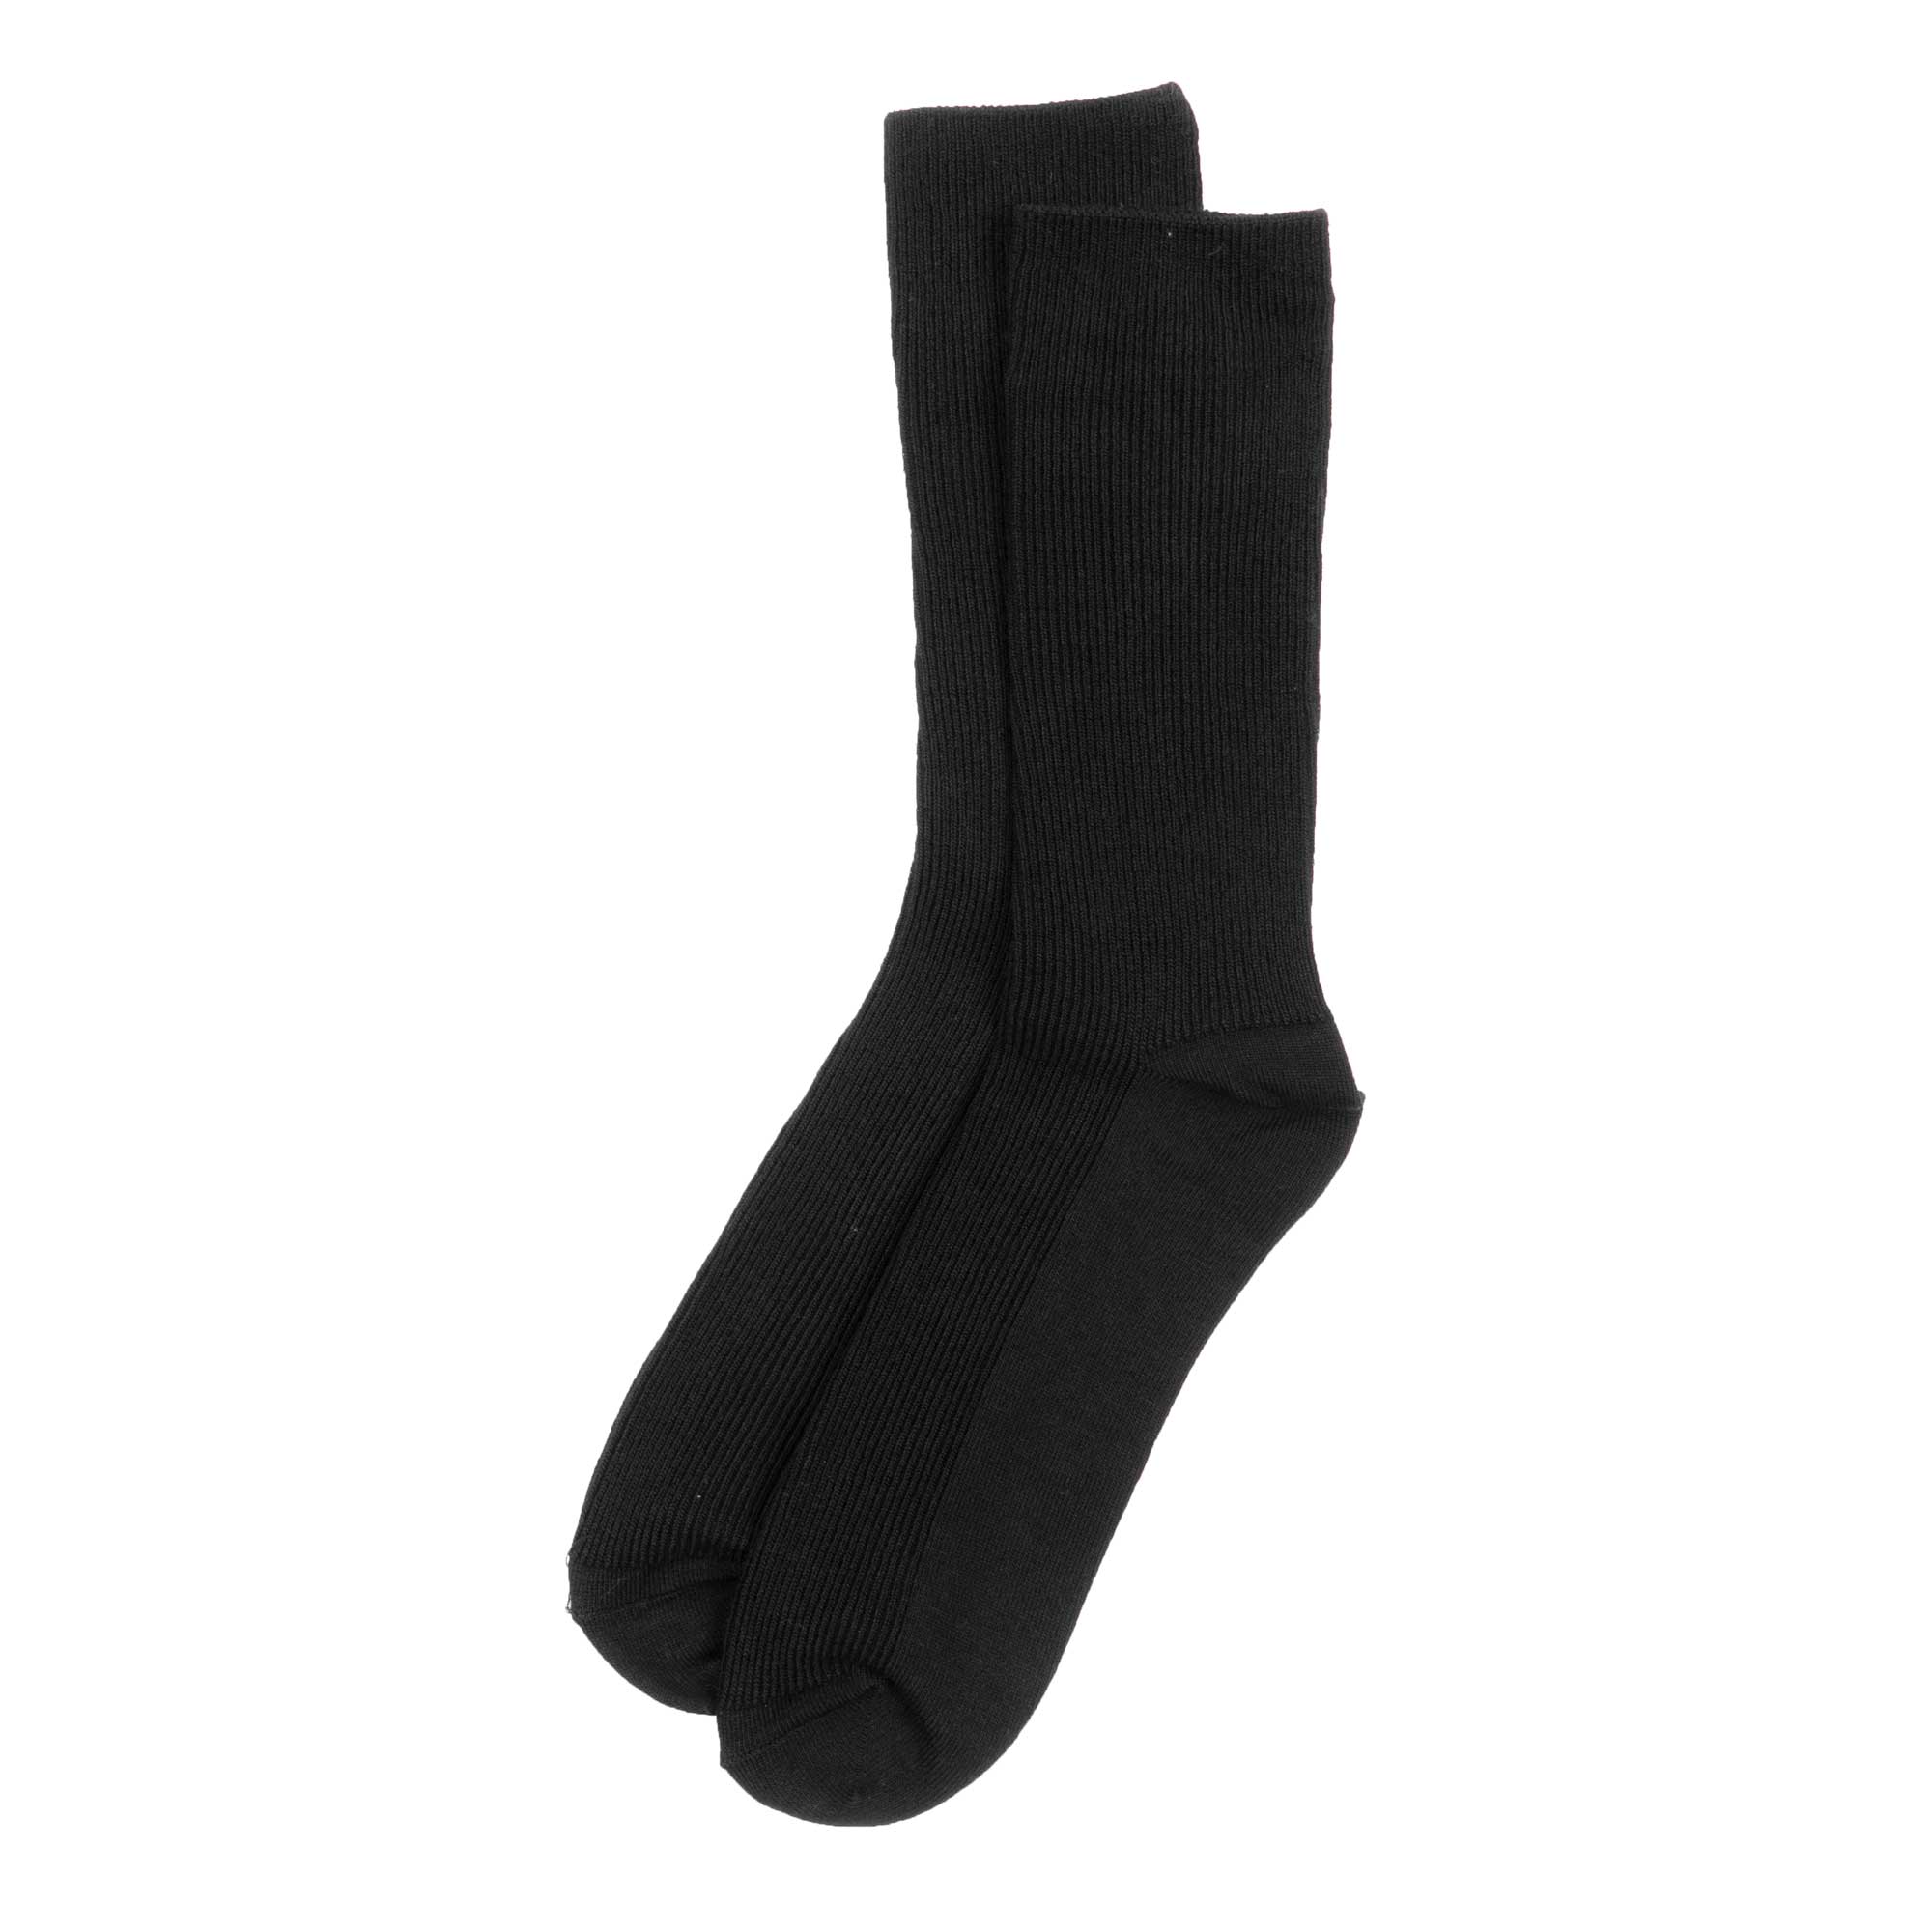 Truform Women Trouser Socks  Knee High 1520mmHg Cable pattern  Select  Socks Inc